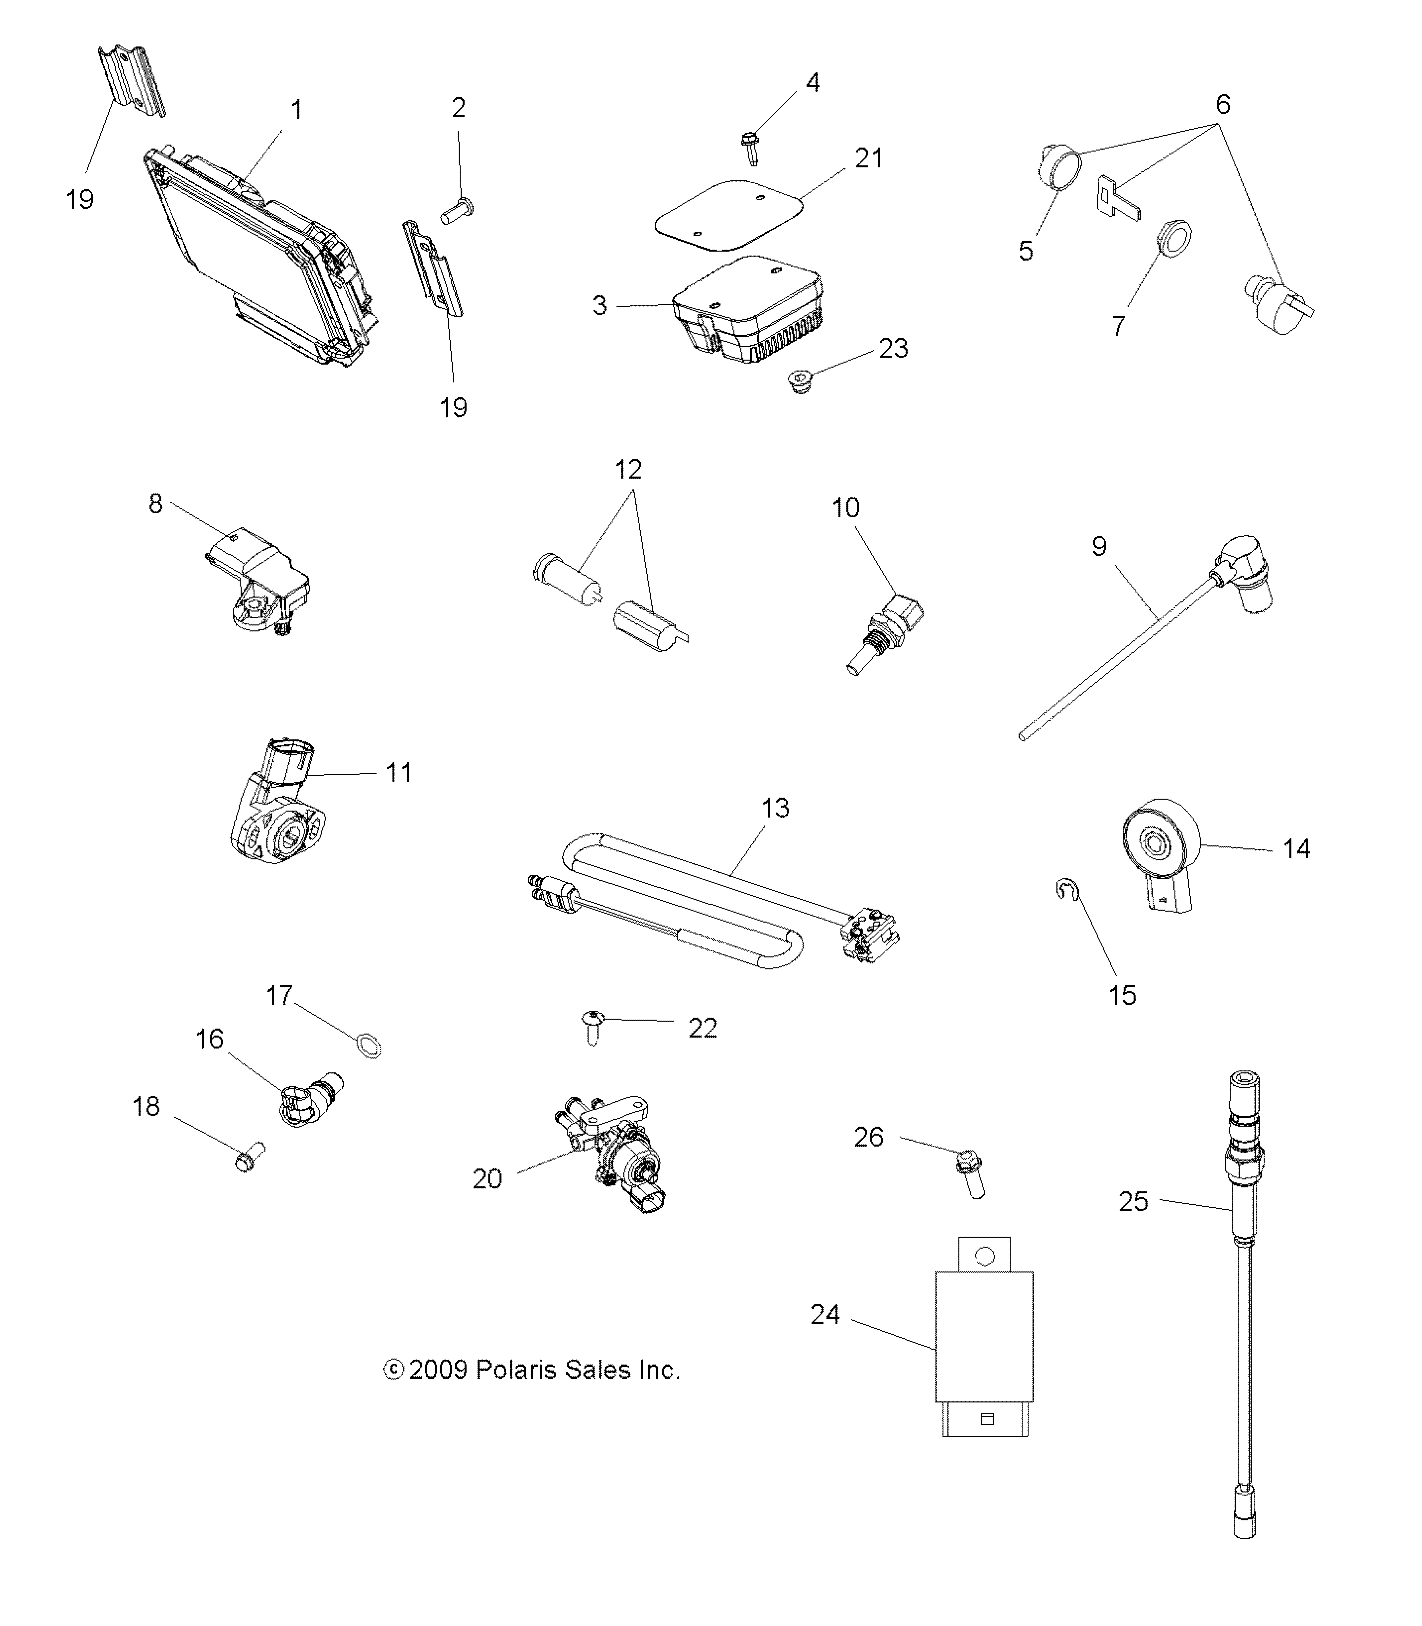 Foto diagrama Polaris que contem a peça 4011638